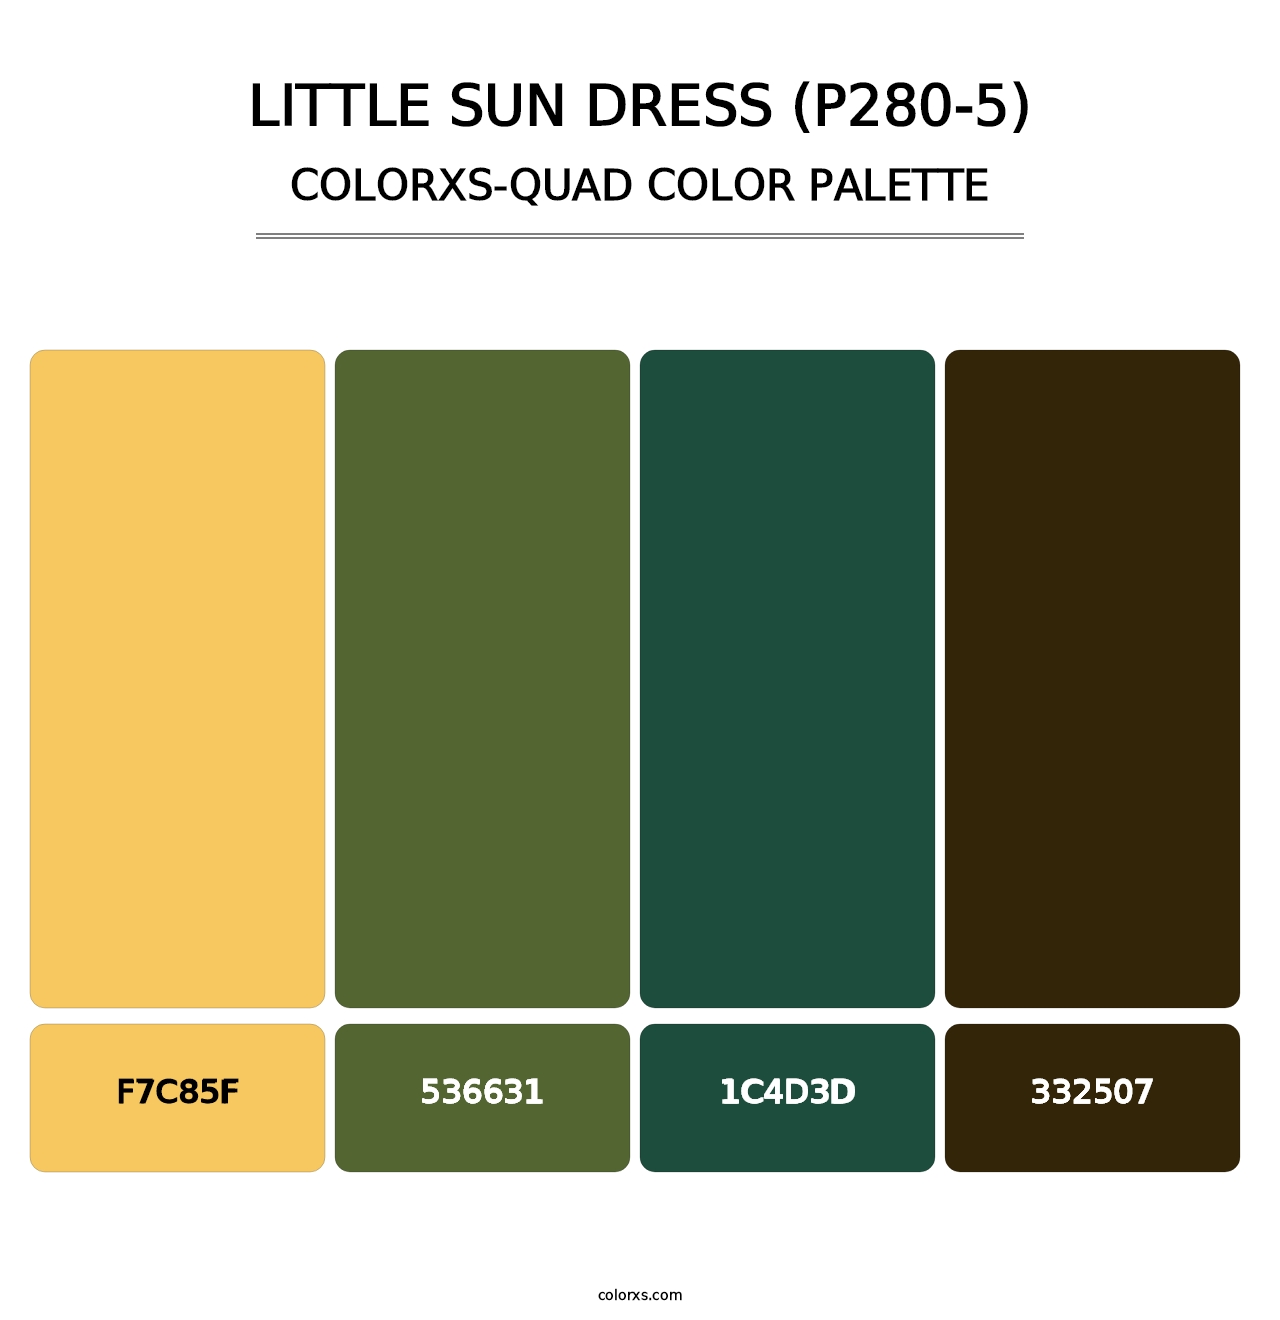 Little Sun Dress (P280-5) - Colorxs Quad Palette